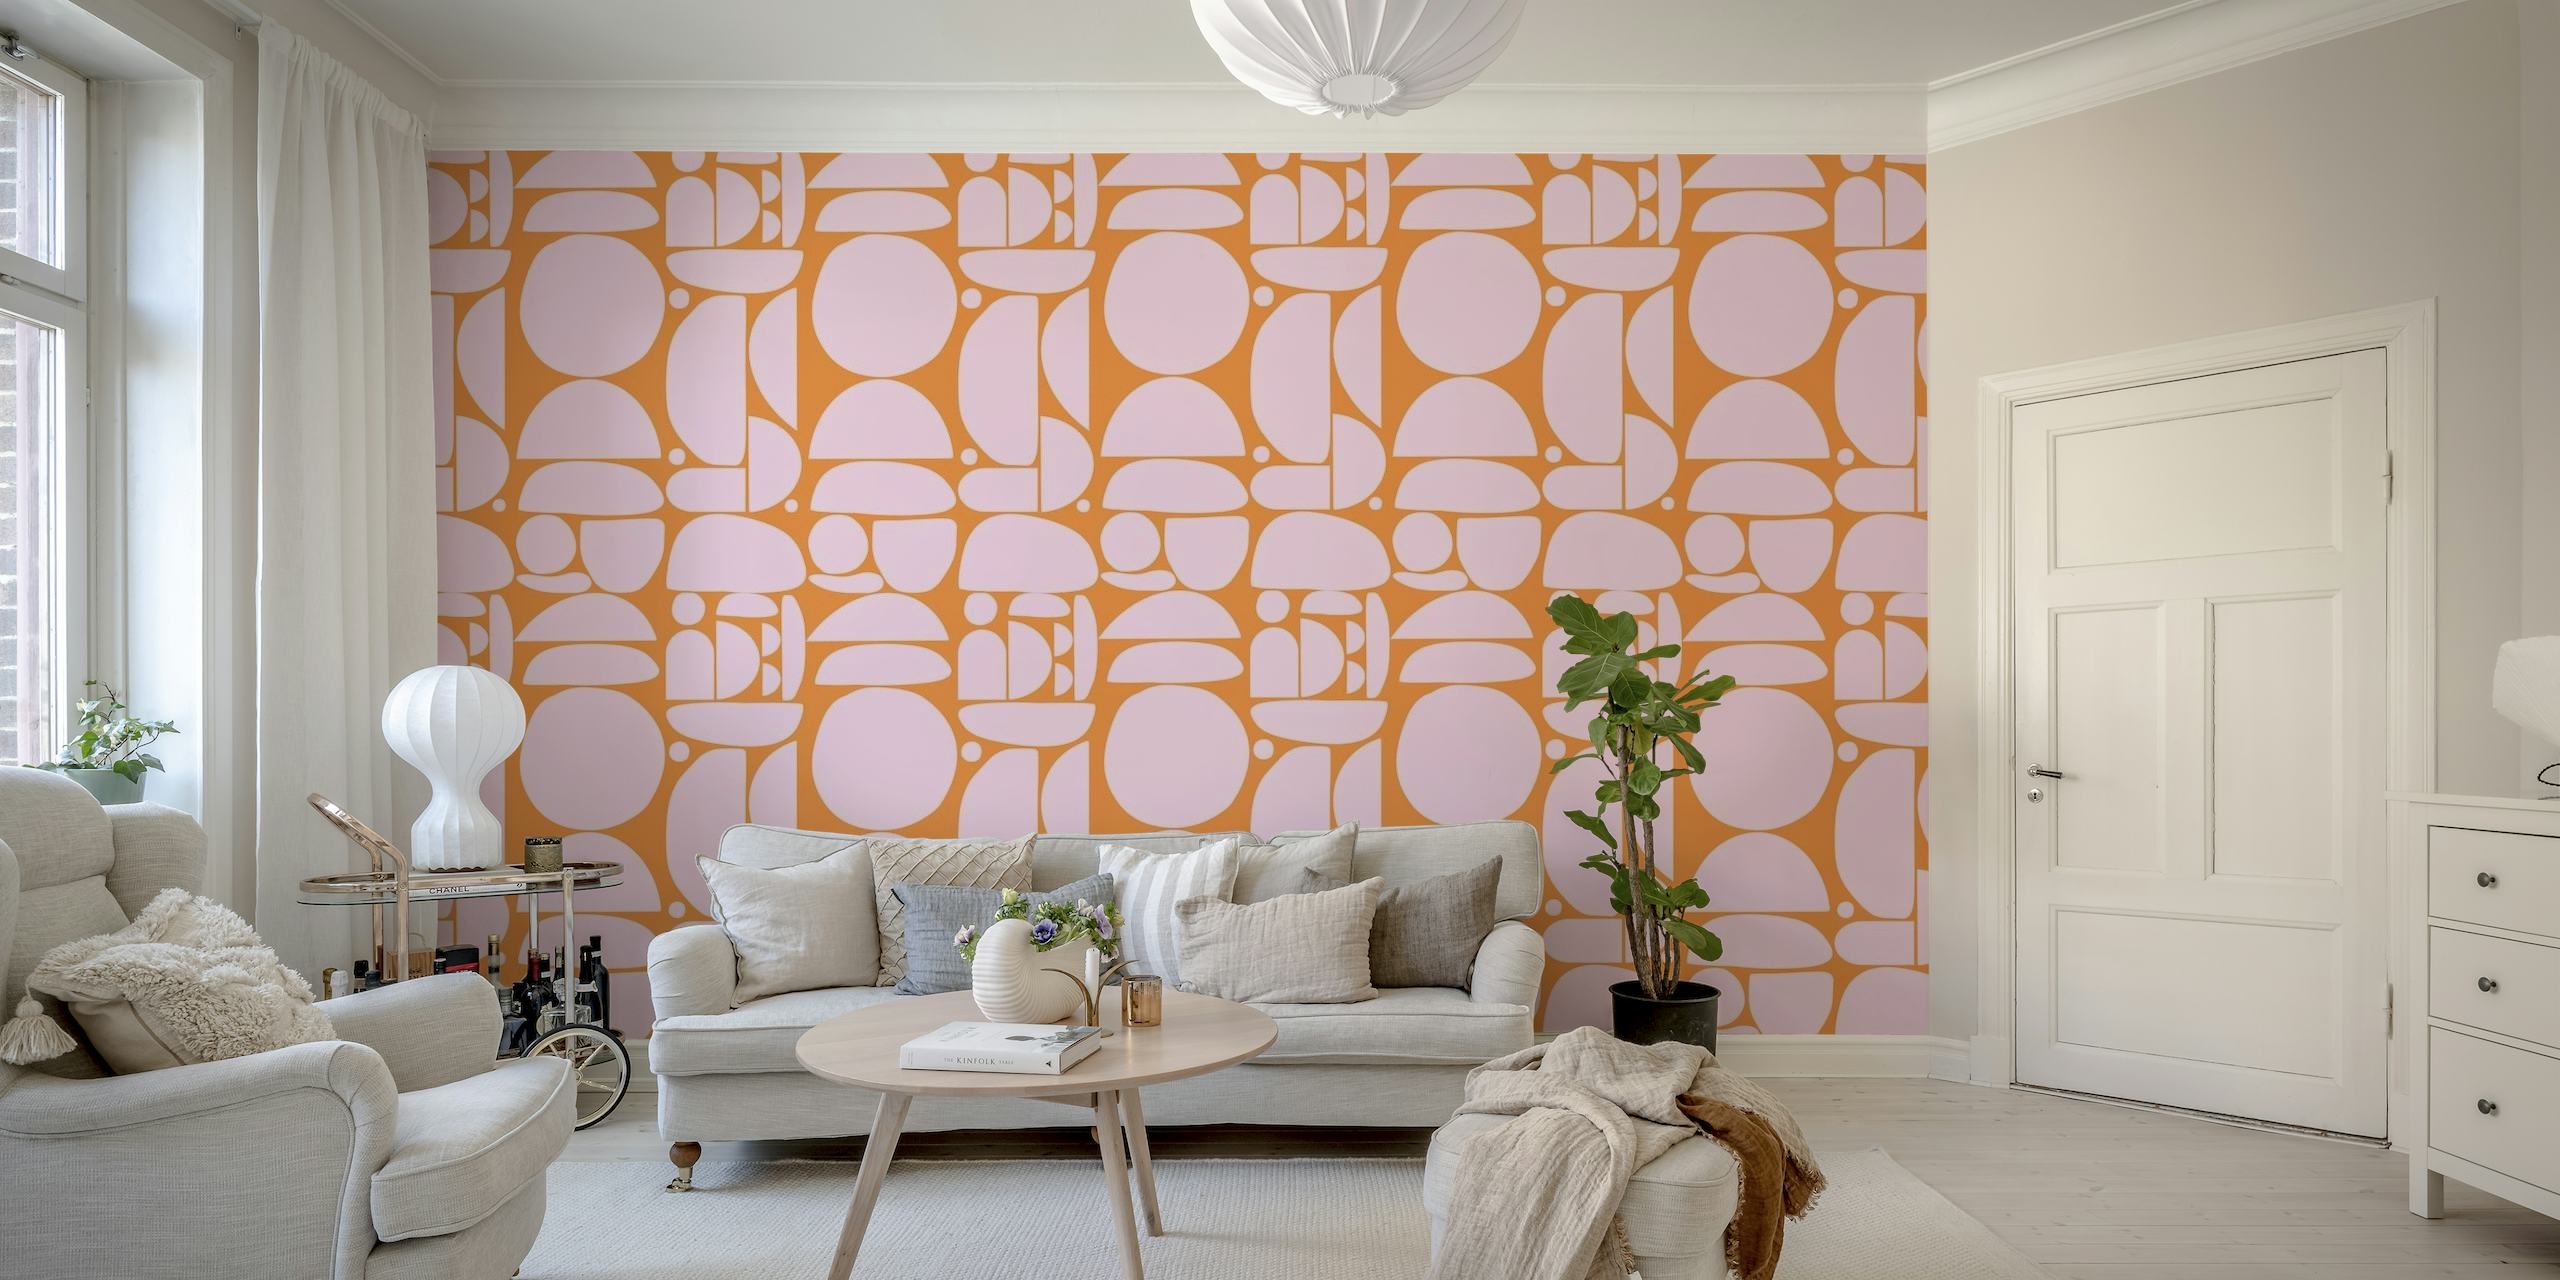 Apstraktni ružičasti i narančasti geometrijski izrezi oblikuju zidni mural